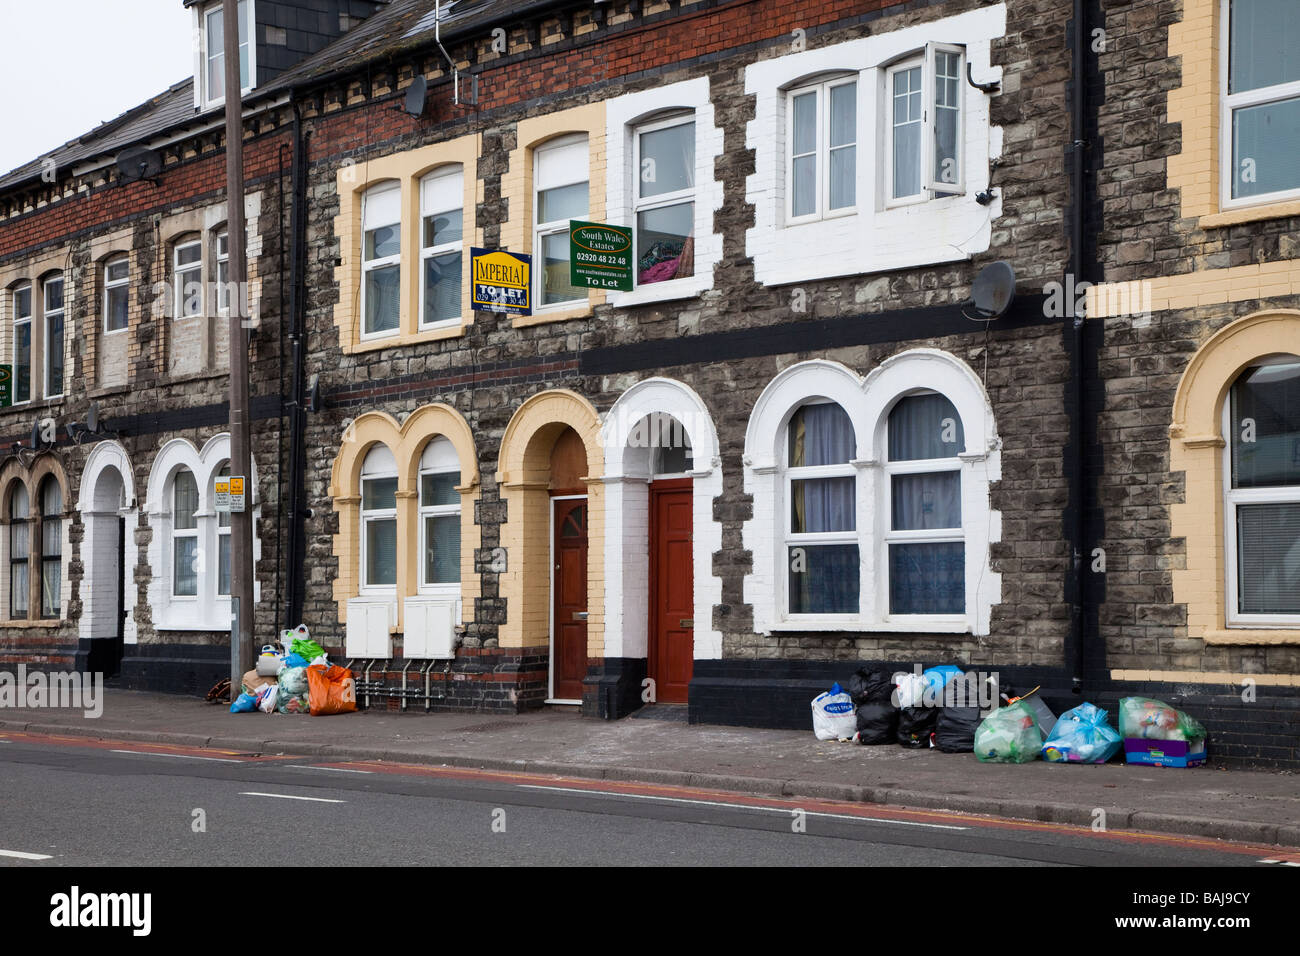 Les ordures dans la rue rangée de maisons mitoyennes avec signes de Cardiff Wales UK Banque D'Images